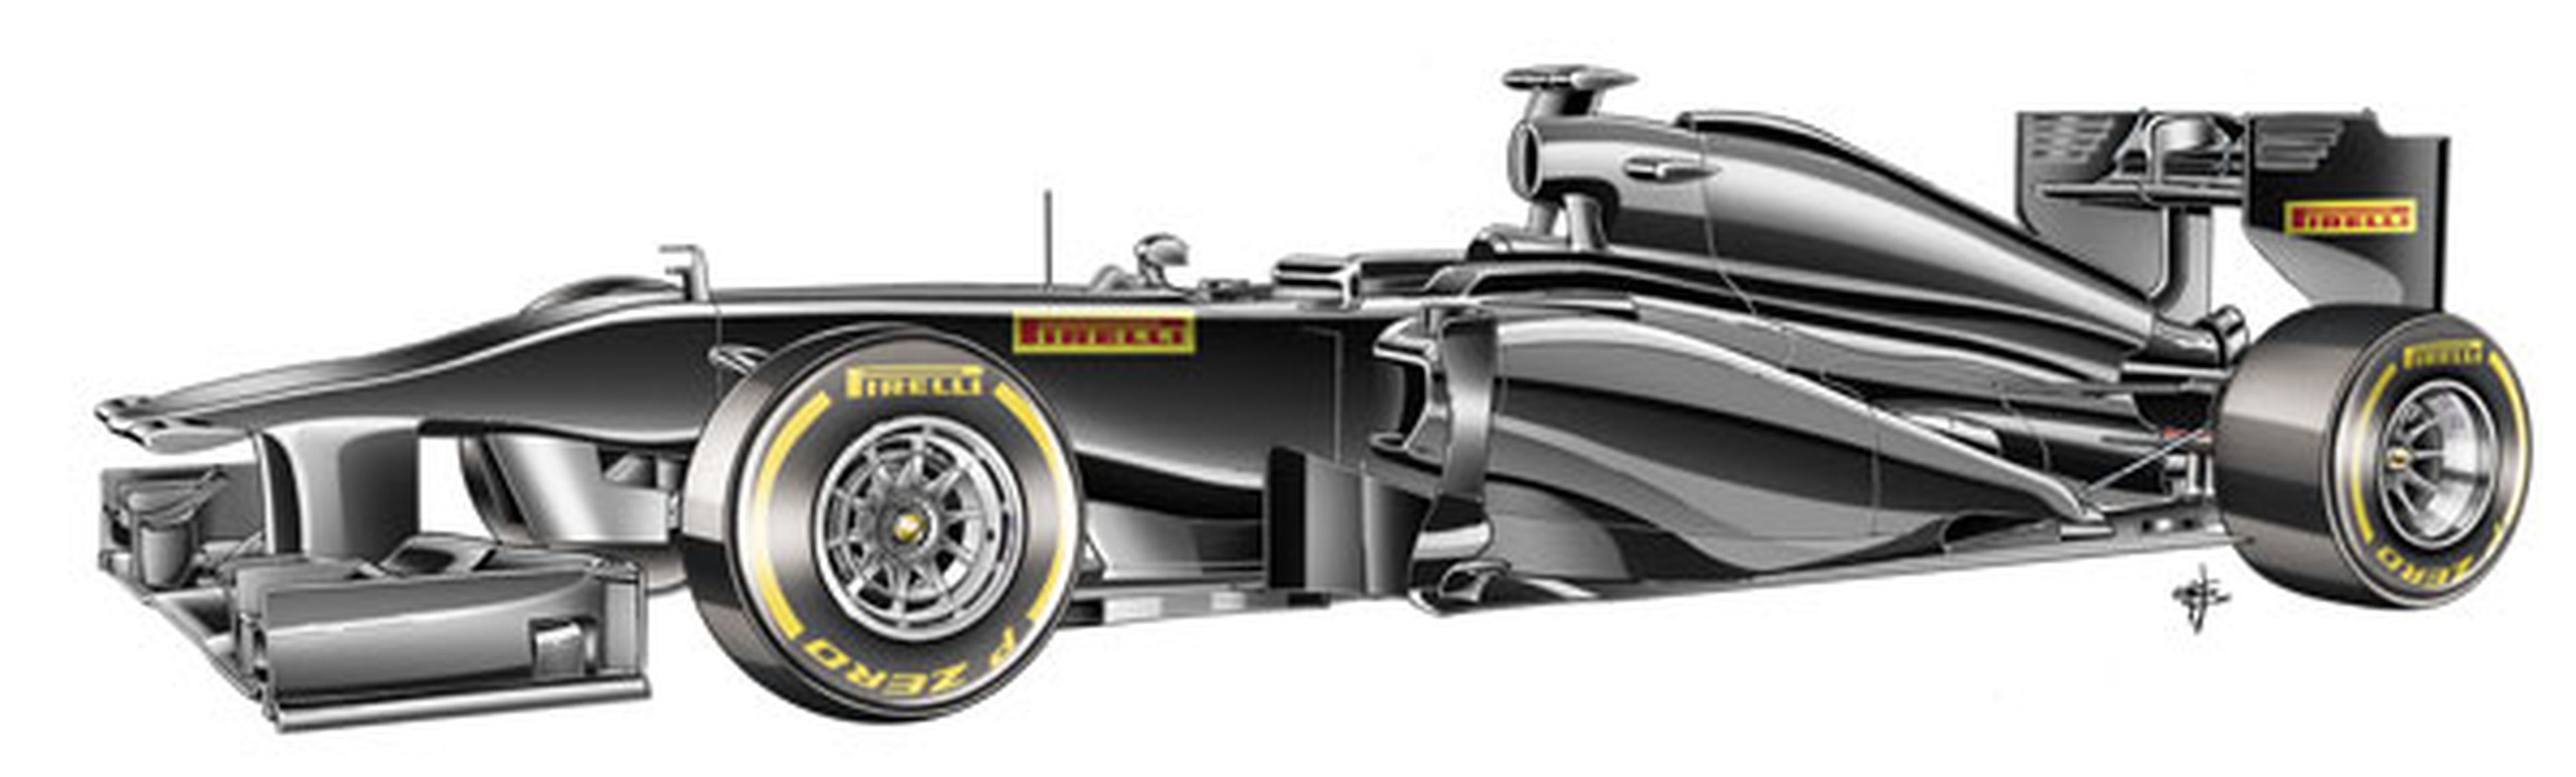 Neumáticos Pirelli F1 2013